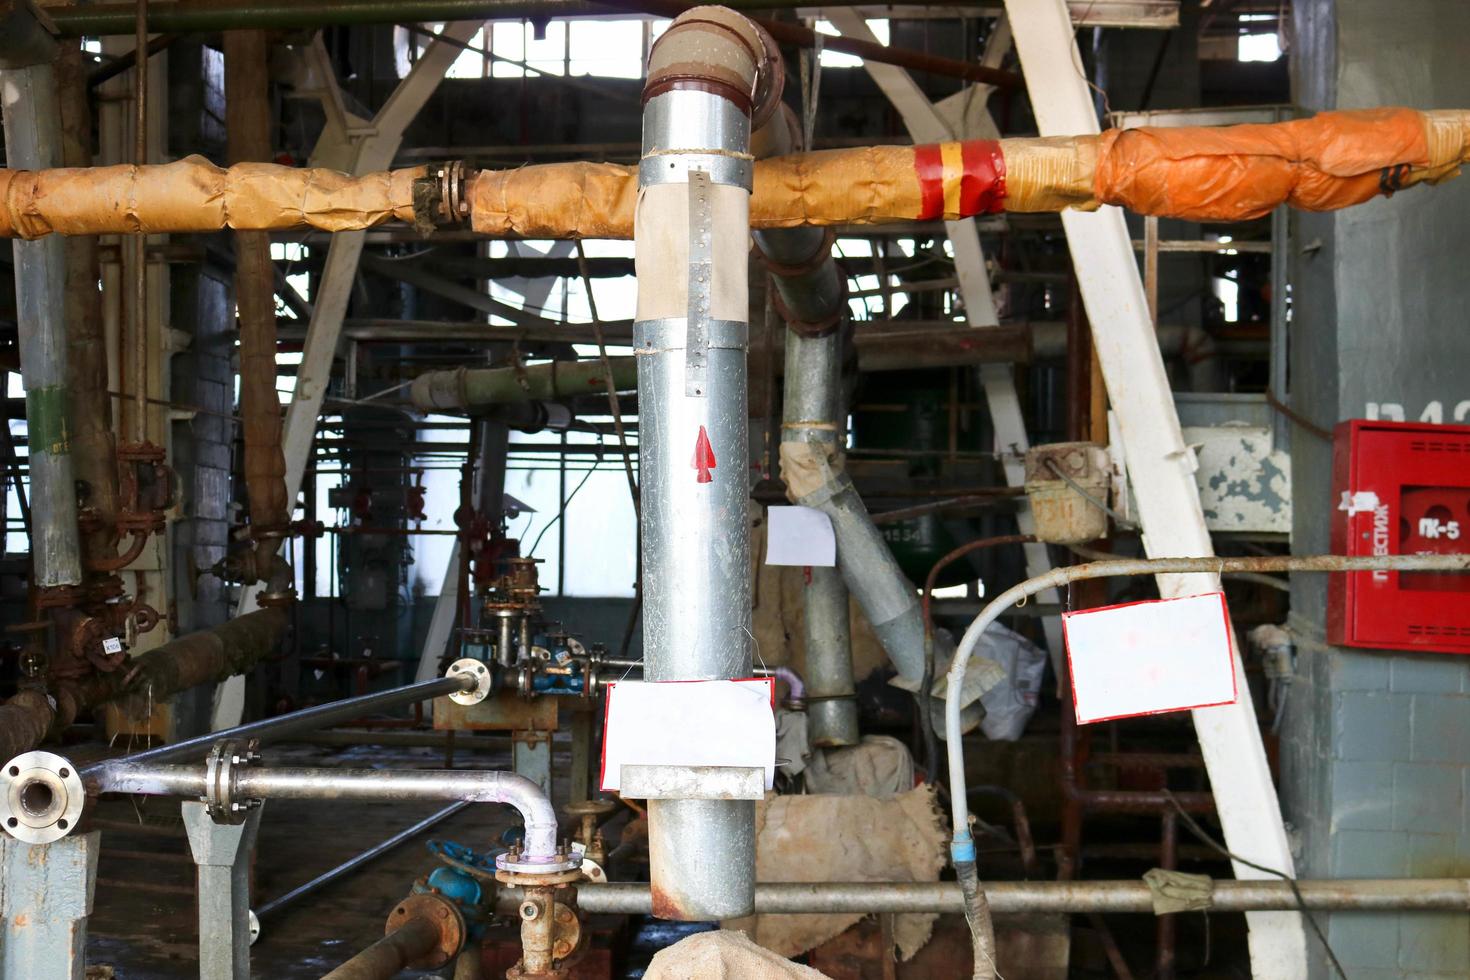 réparation d'équipements de traitement chimique de pipelines, pompes, réservoirs, échangeurs de chaleur, brides et vannes dans les industries chimiques, pétrochimiques et de raffinerie photo